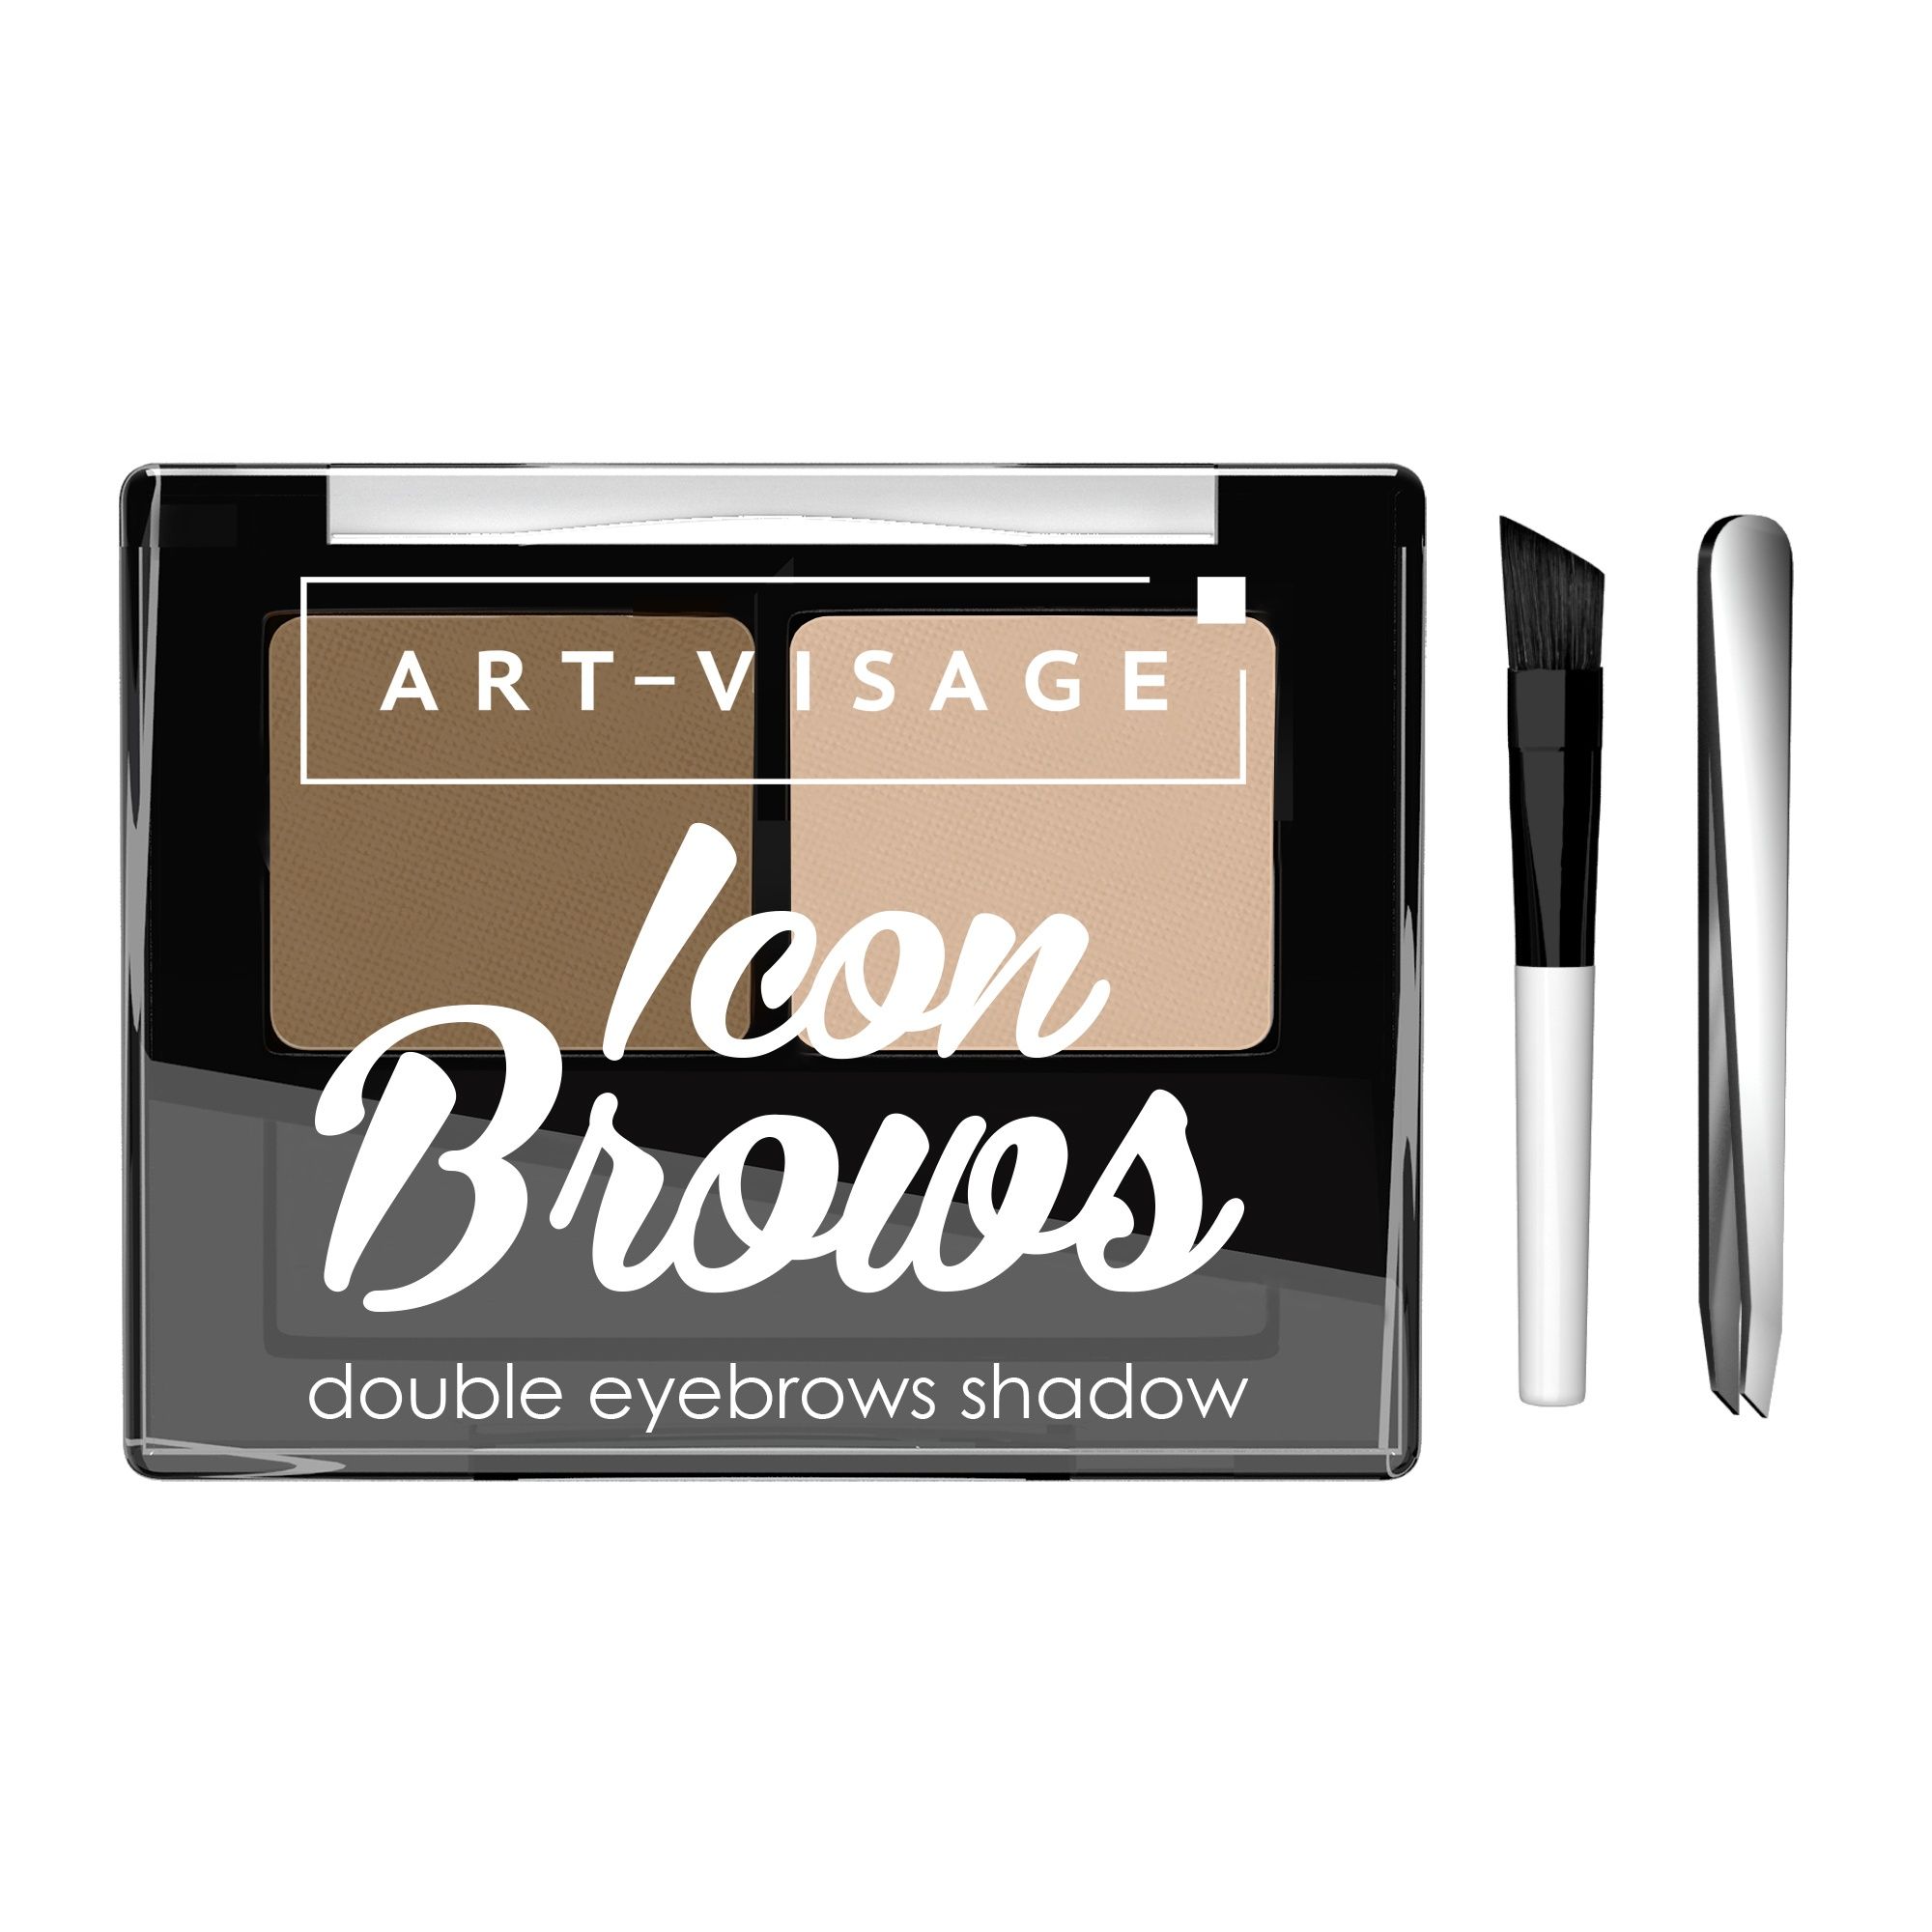 Art-Visage Двойные тени для бровей ICON BROWS 101